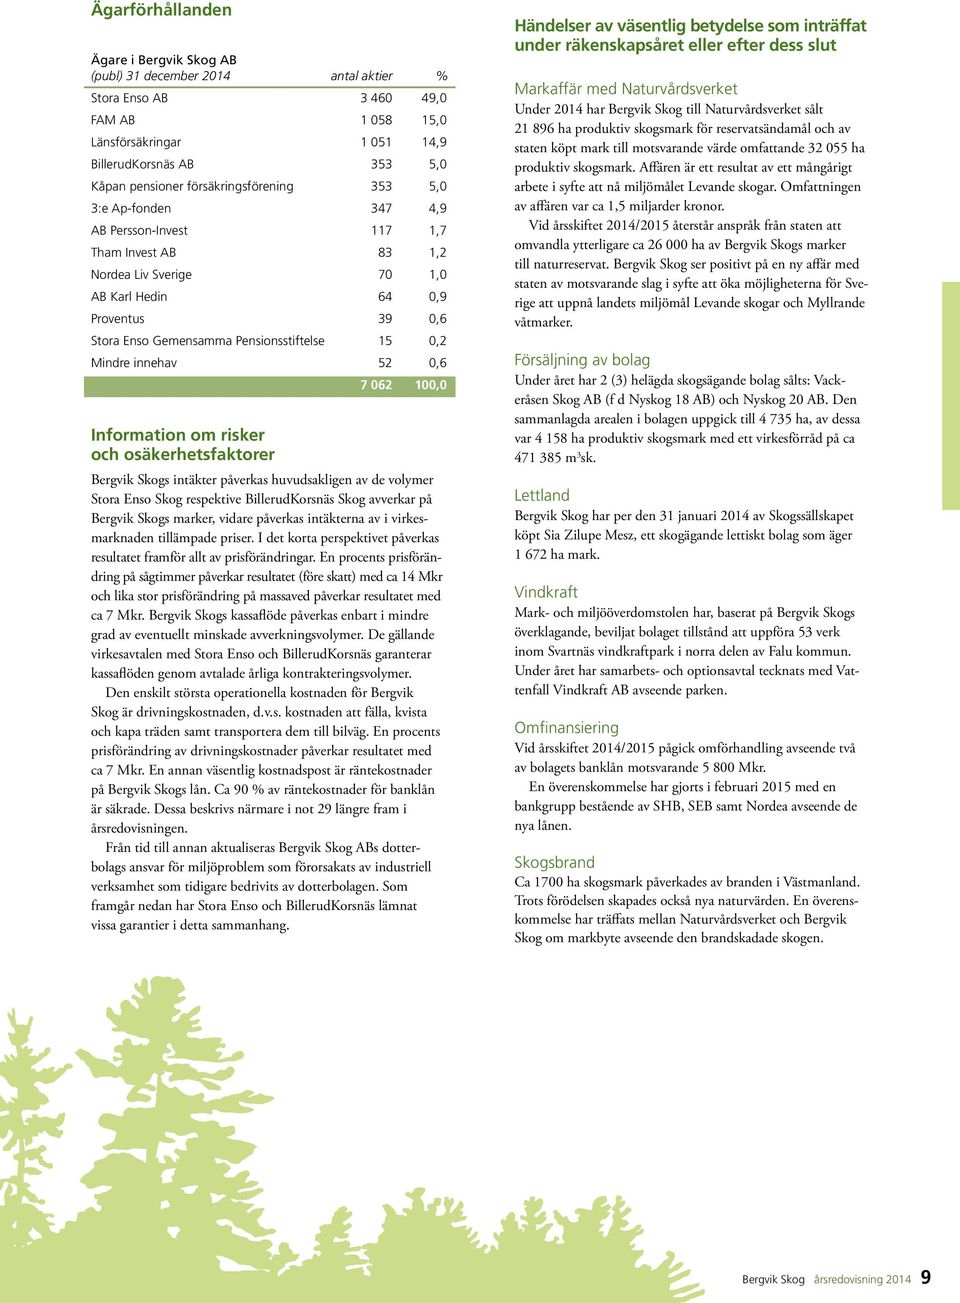 Pensionsstiftelse 15 0,2 Mindre innehav 52 0,6 7 062 100,0 Information om risker och osäkerhetsfaktorer Bergvik Skogs intäkter påverkas huvudsakligen av de volymer Stora Enso Skog respektive